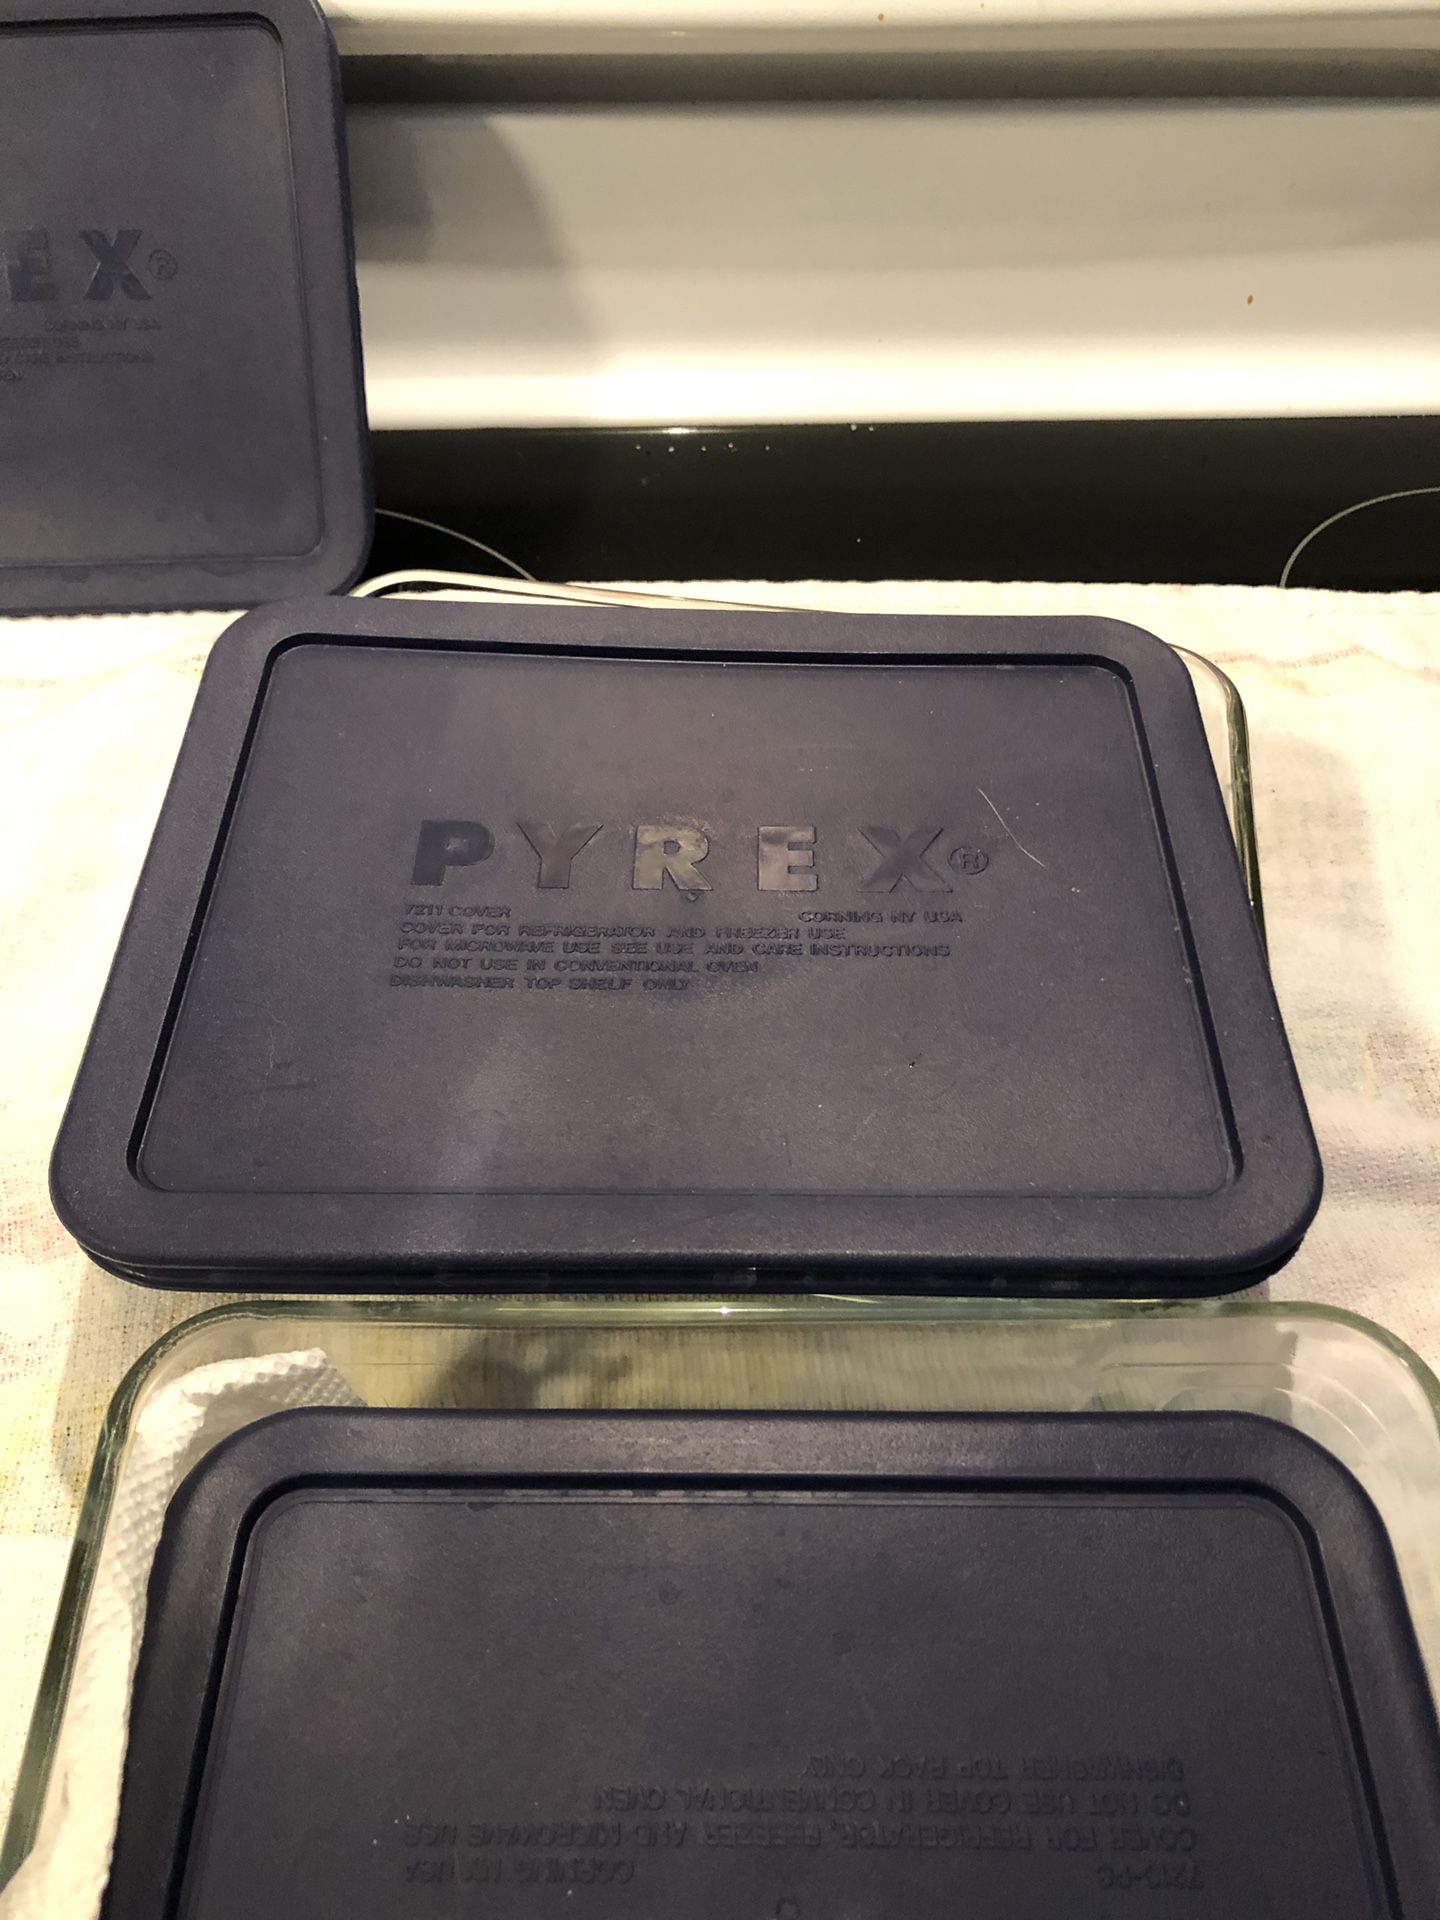 Pyrex cookware